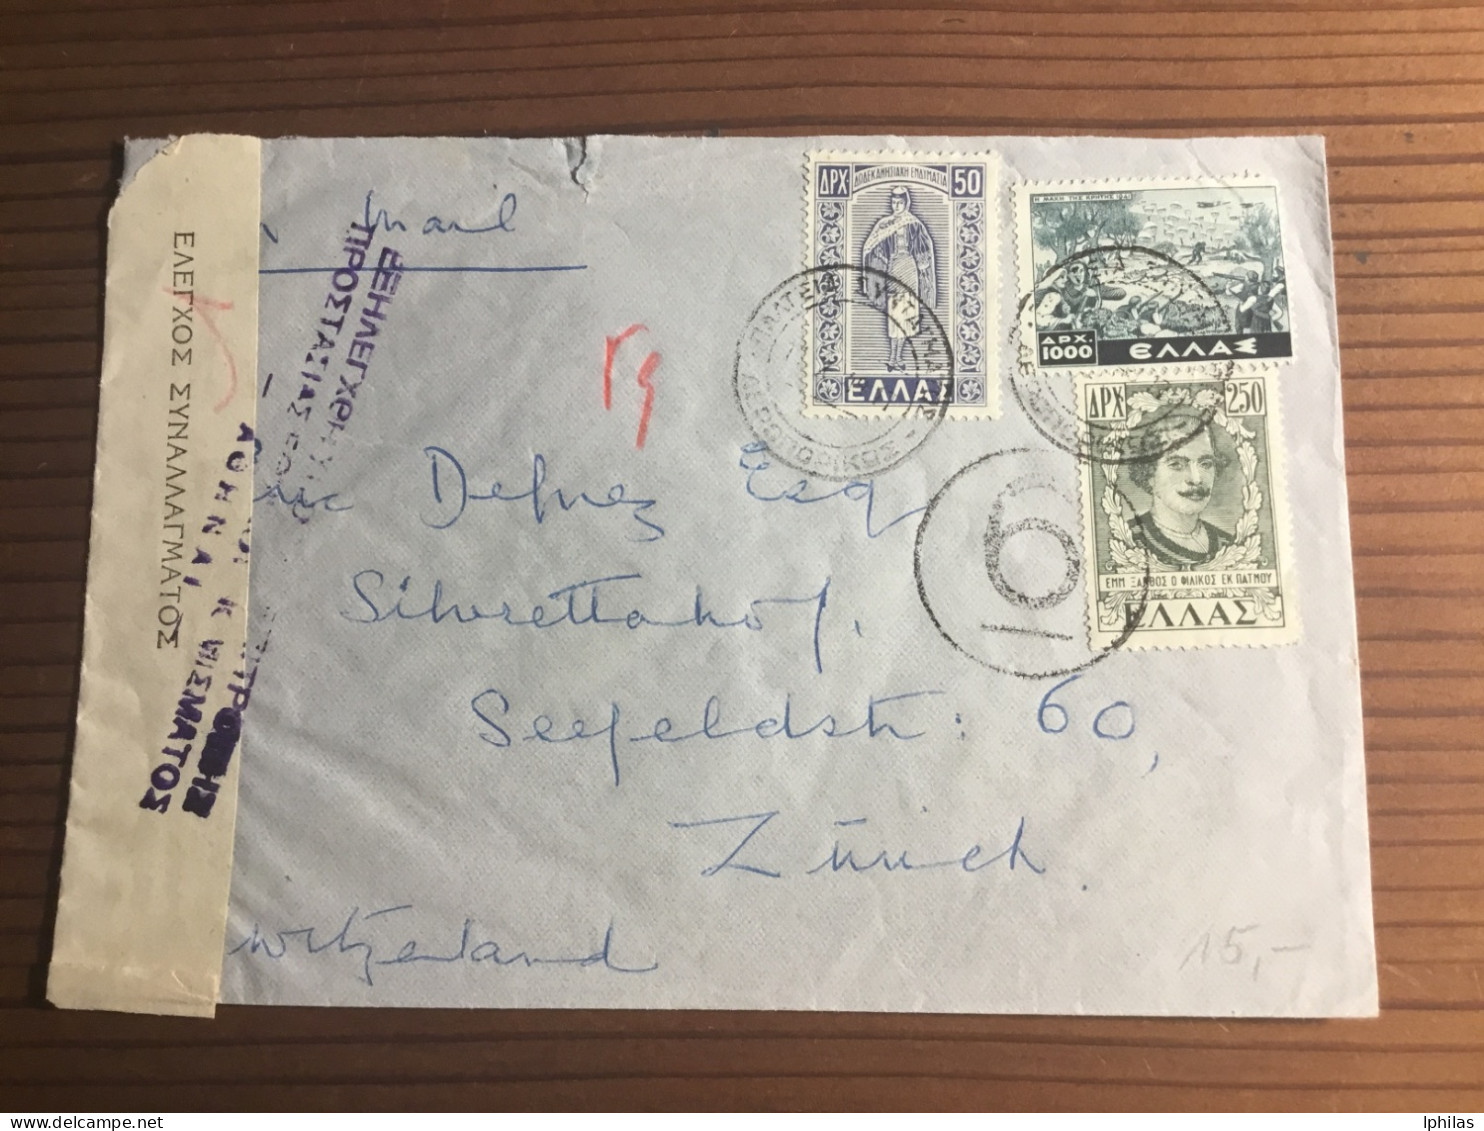 Griechenland 1949 Zensurbrief In Die Schweiz - Briefe U. Dokumente